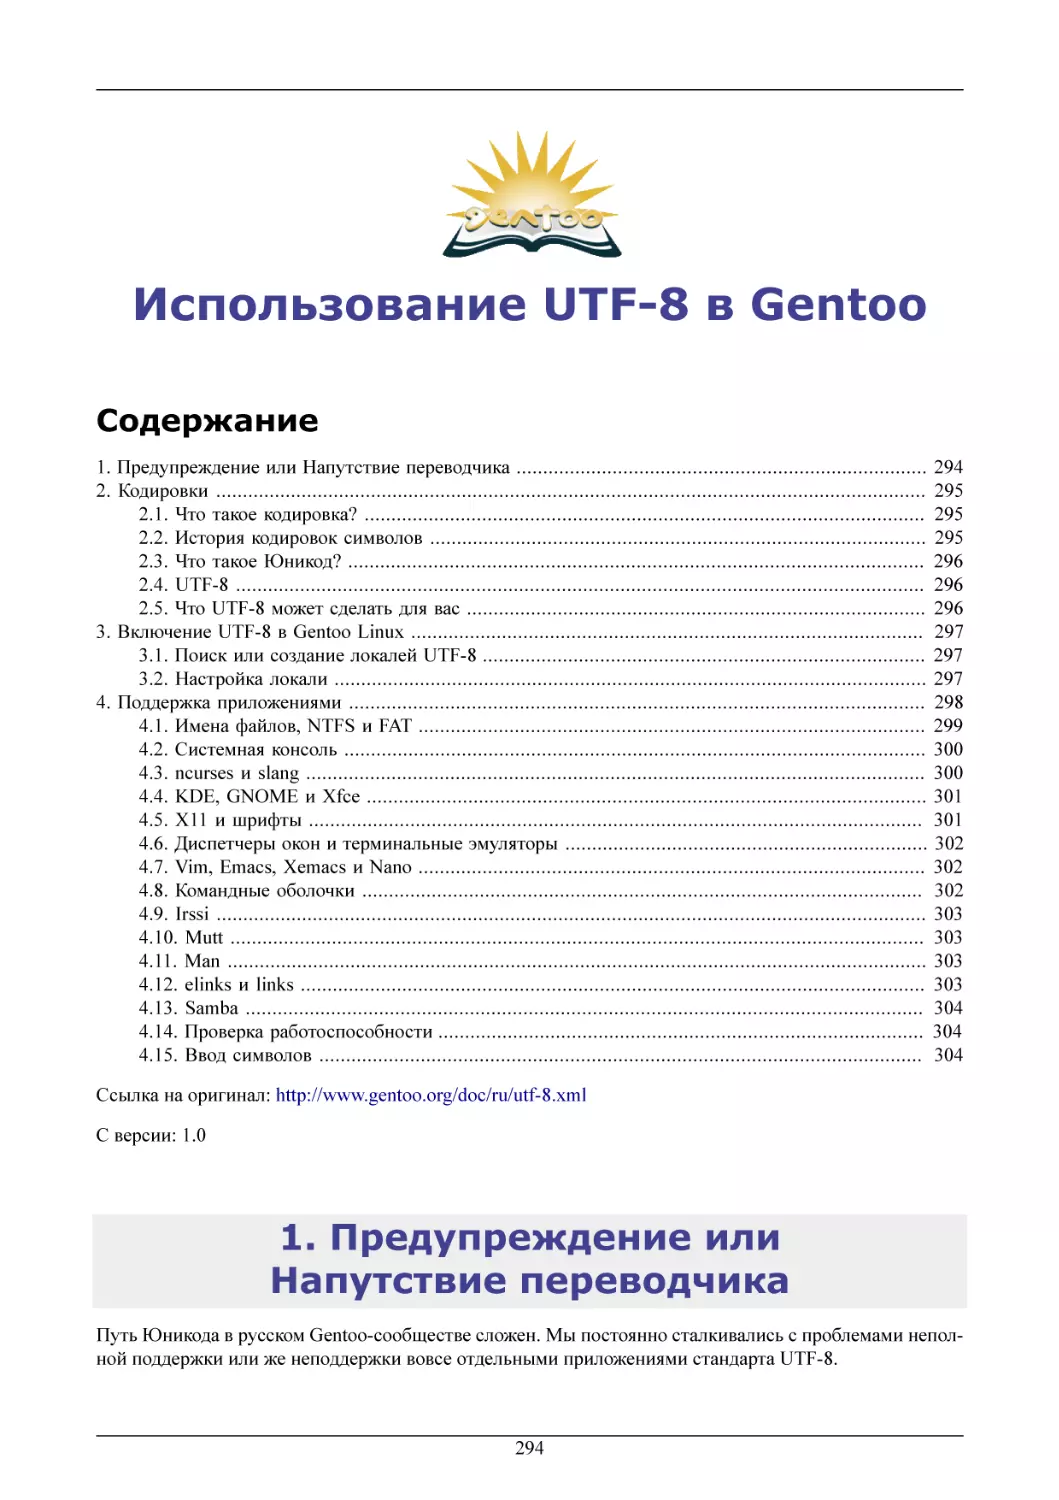 Использование UTF-8 в Gentoo
Предупреждение или Напутствие переводчика